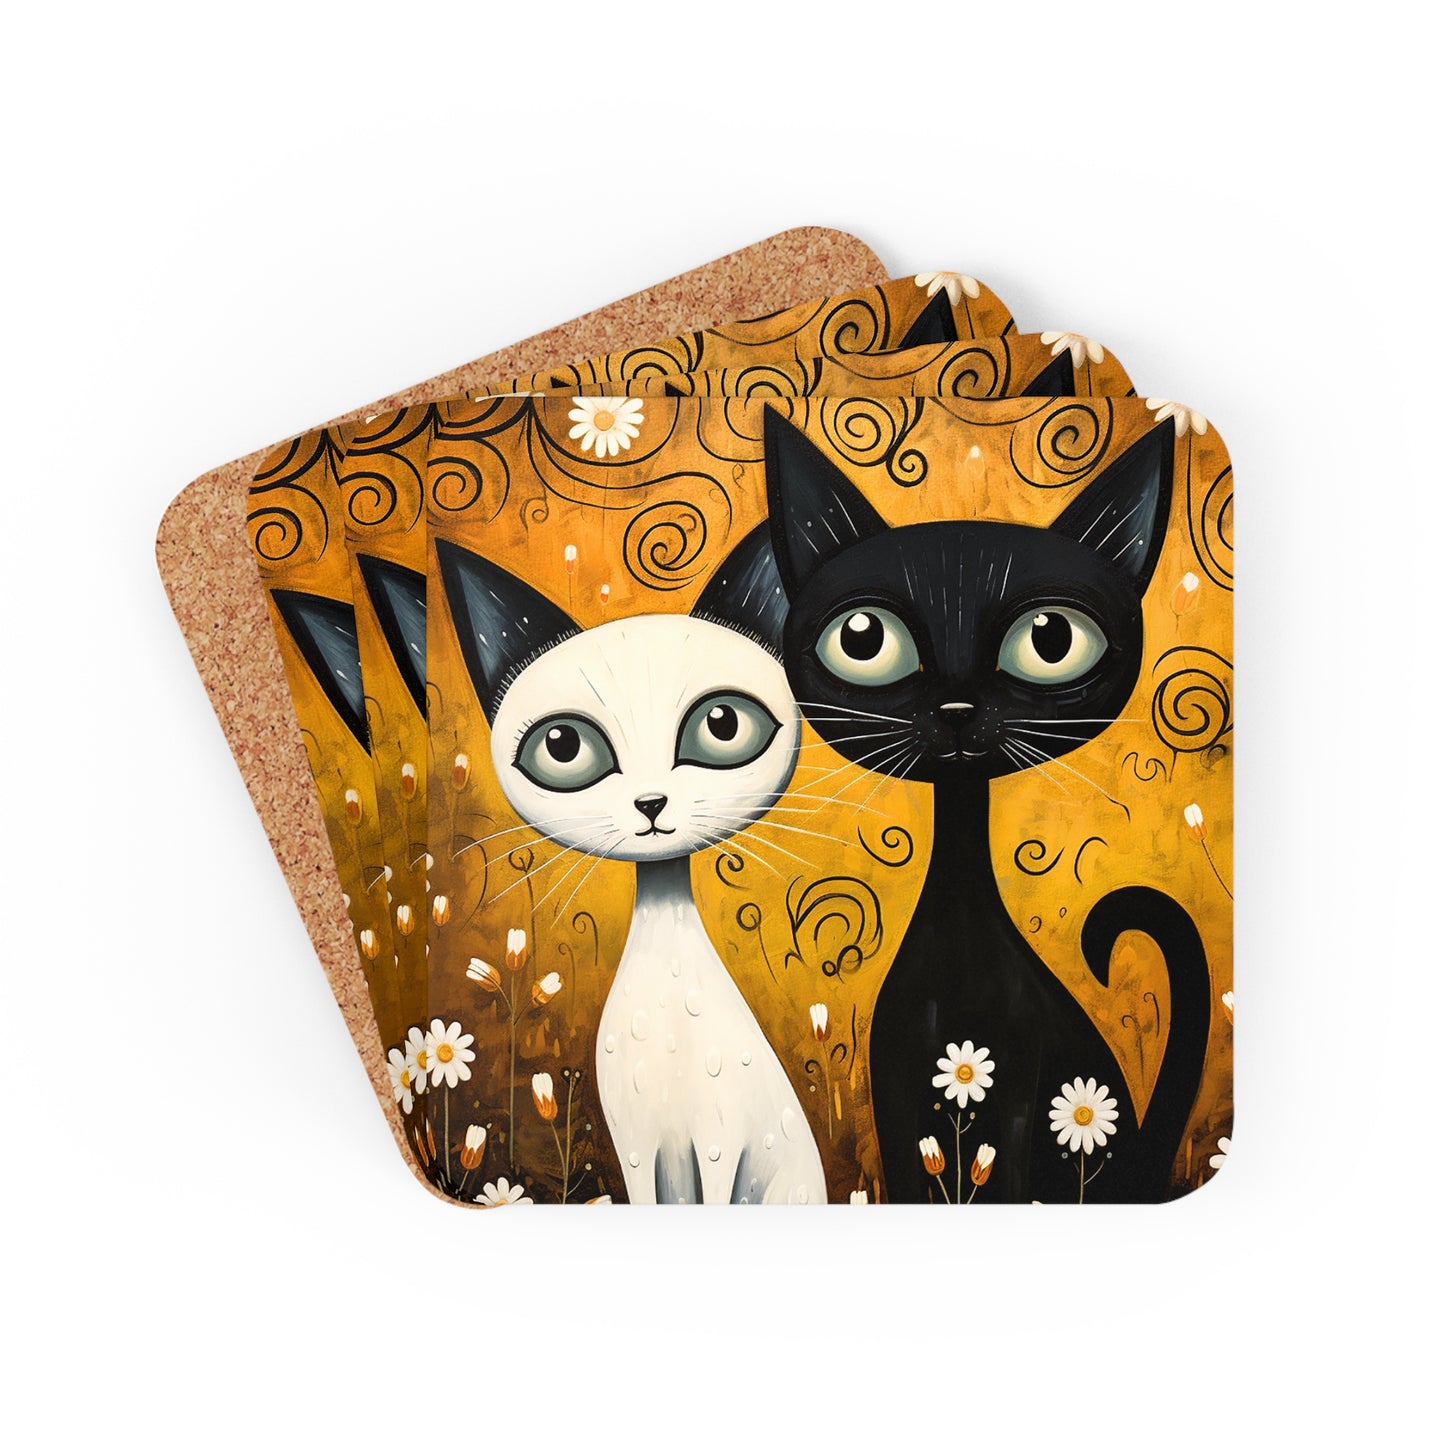 Cats - Corkwood Coaster Set